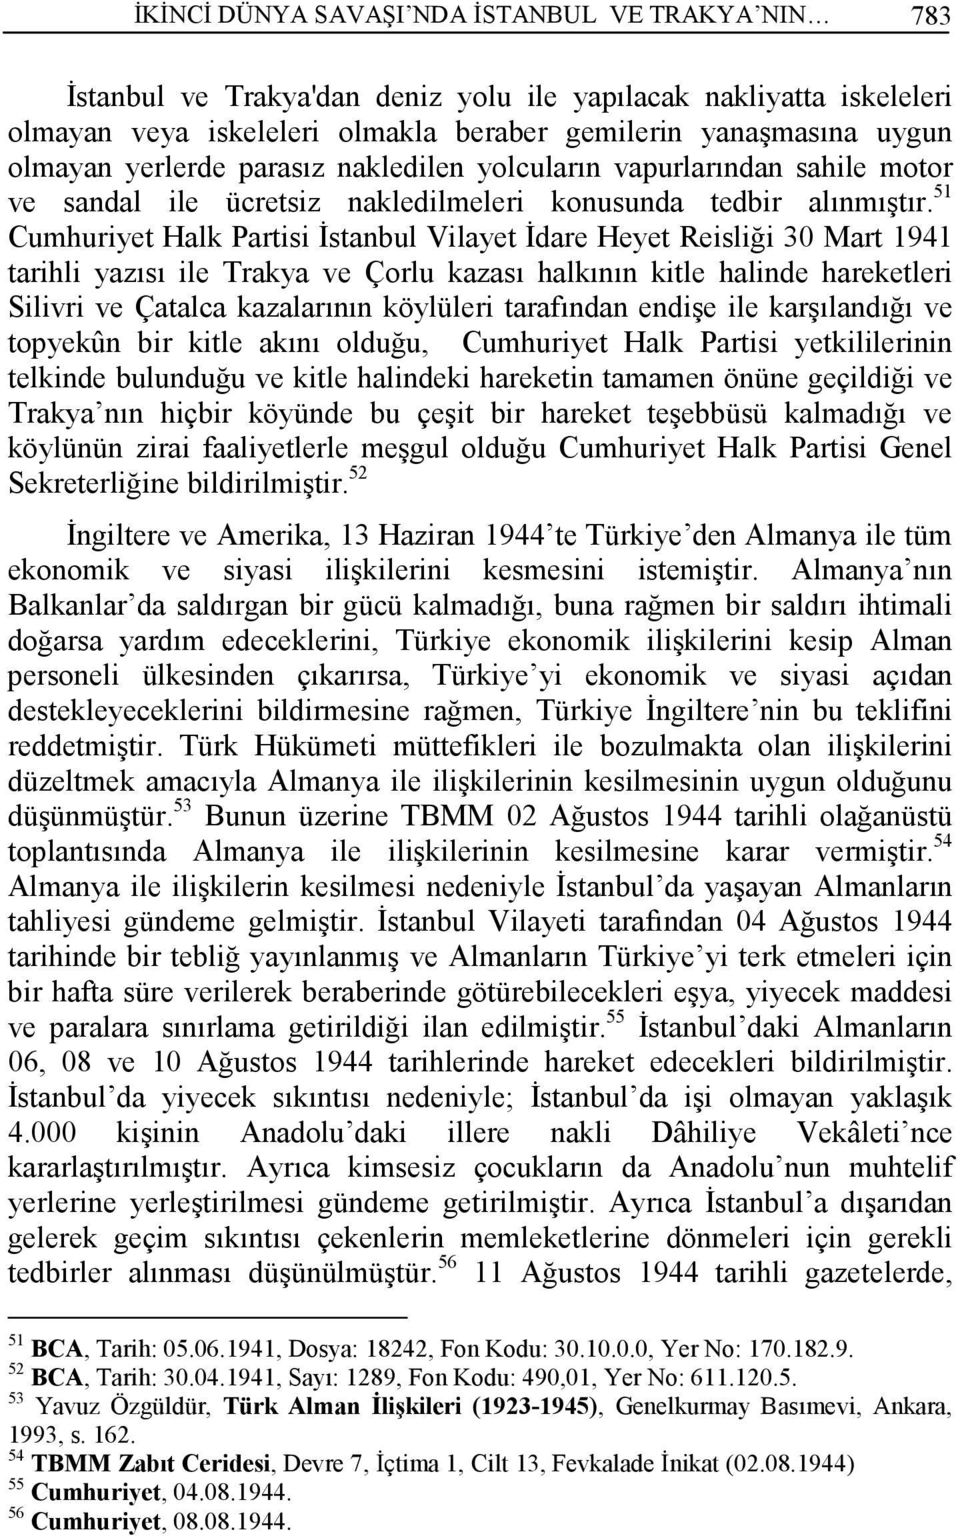 51 Cumhuriyet Halk Partisi Đstanbul Vilayet Đdare Heyet Reisliği 30 Mart 1941 tarihli yazısı ile Trakya ve Çorlu kazası halkının kitle halinde hareketleri Silivri ve Çatalca kazalarının köylüleri